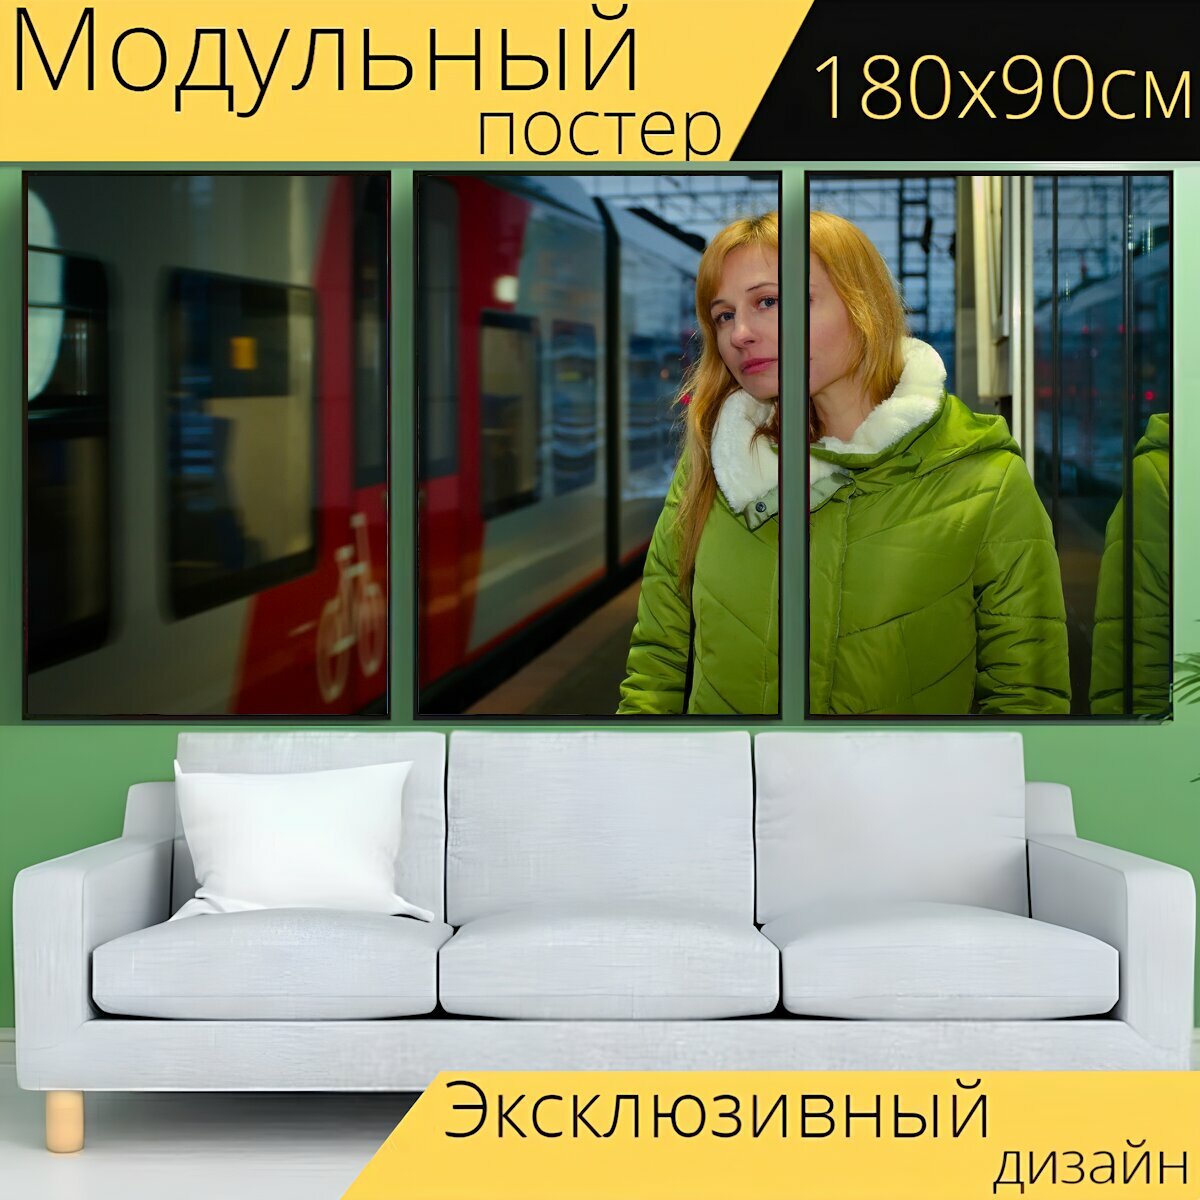 Модульный постер "Поезд, метро, состав" 180 x 90 см. для интерьера